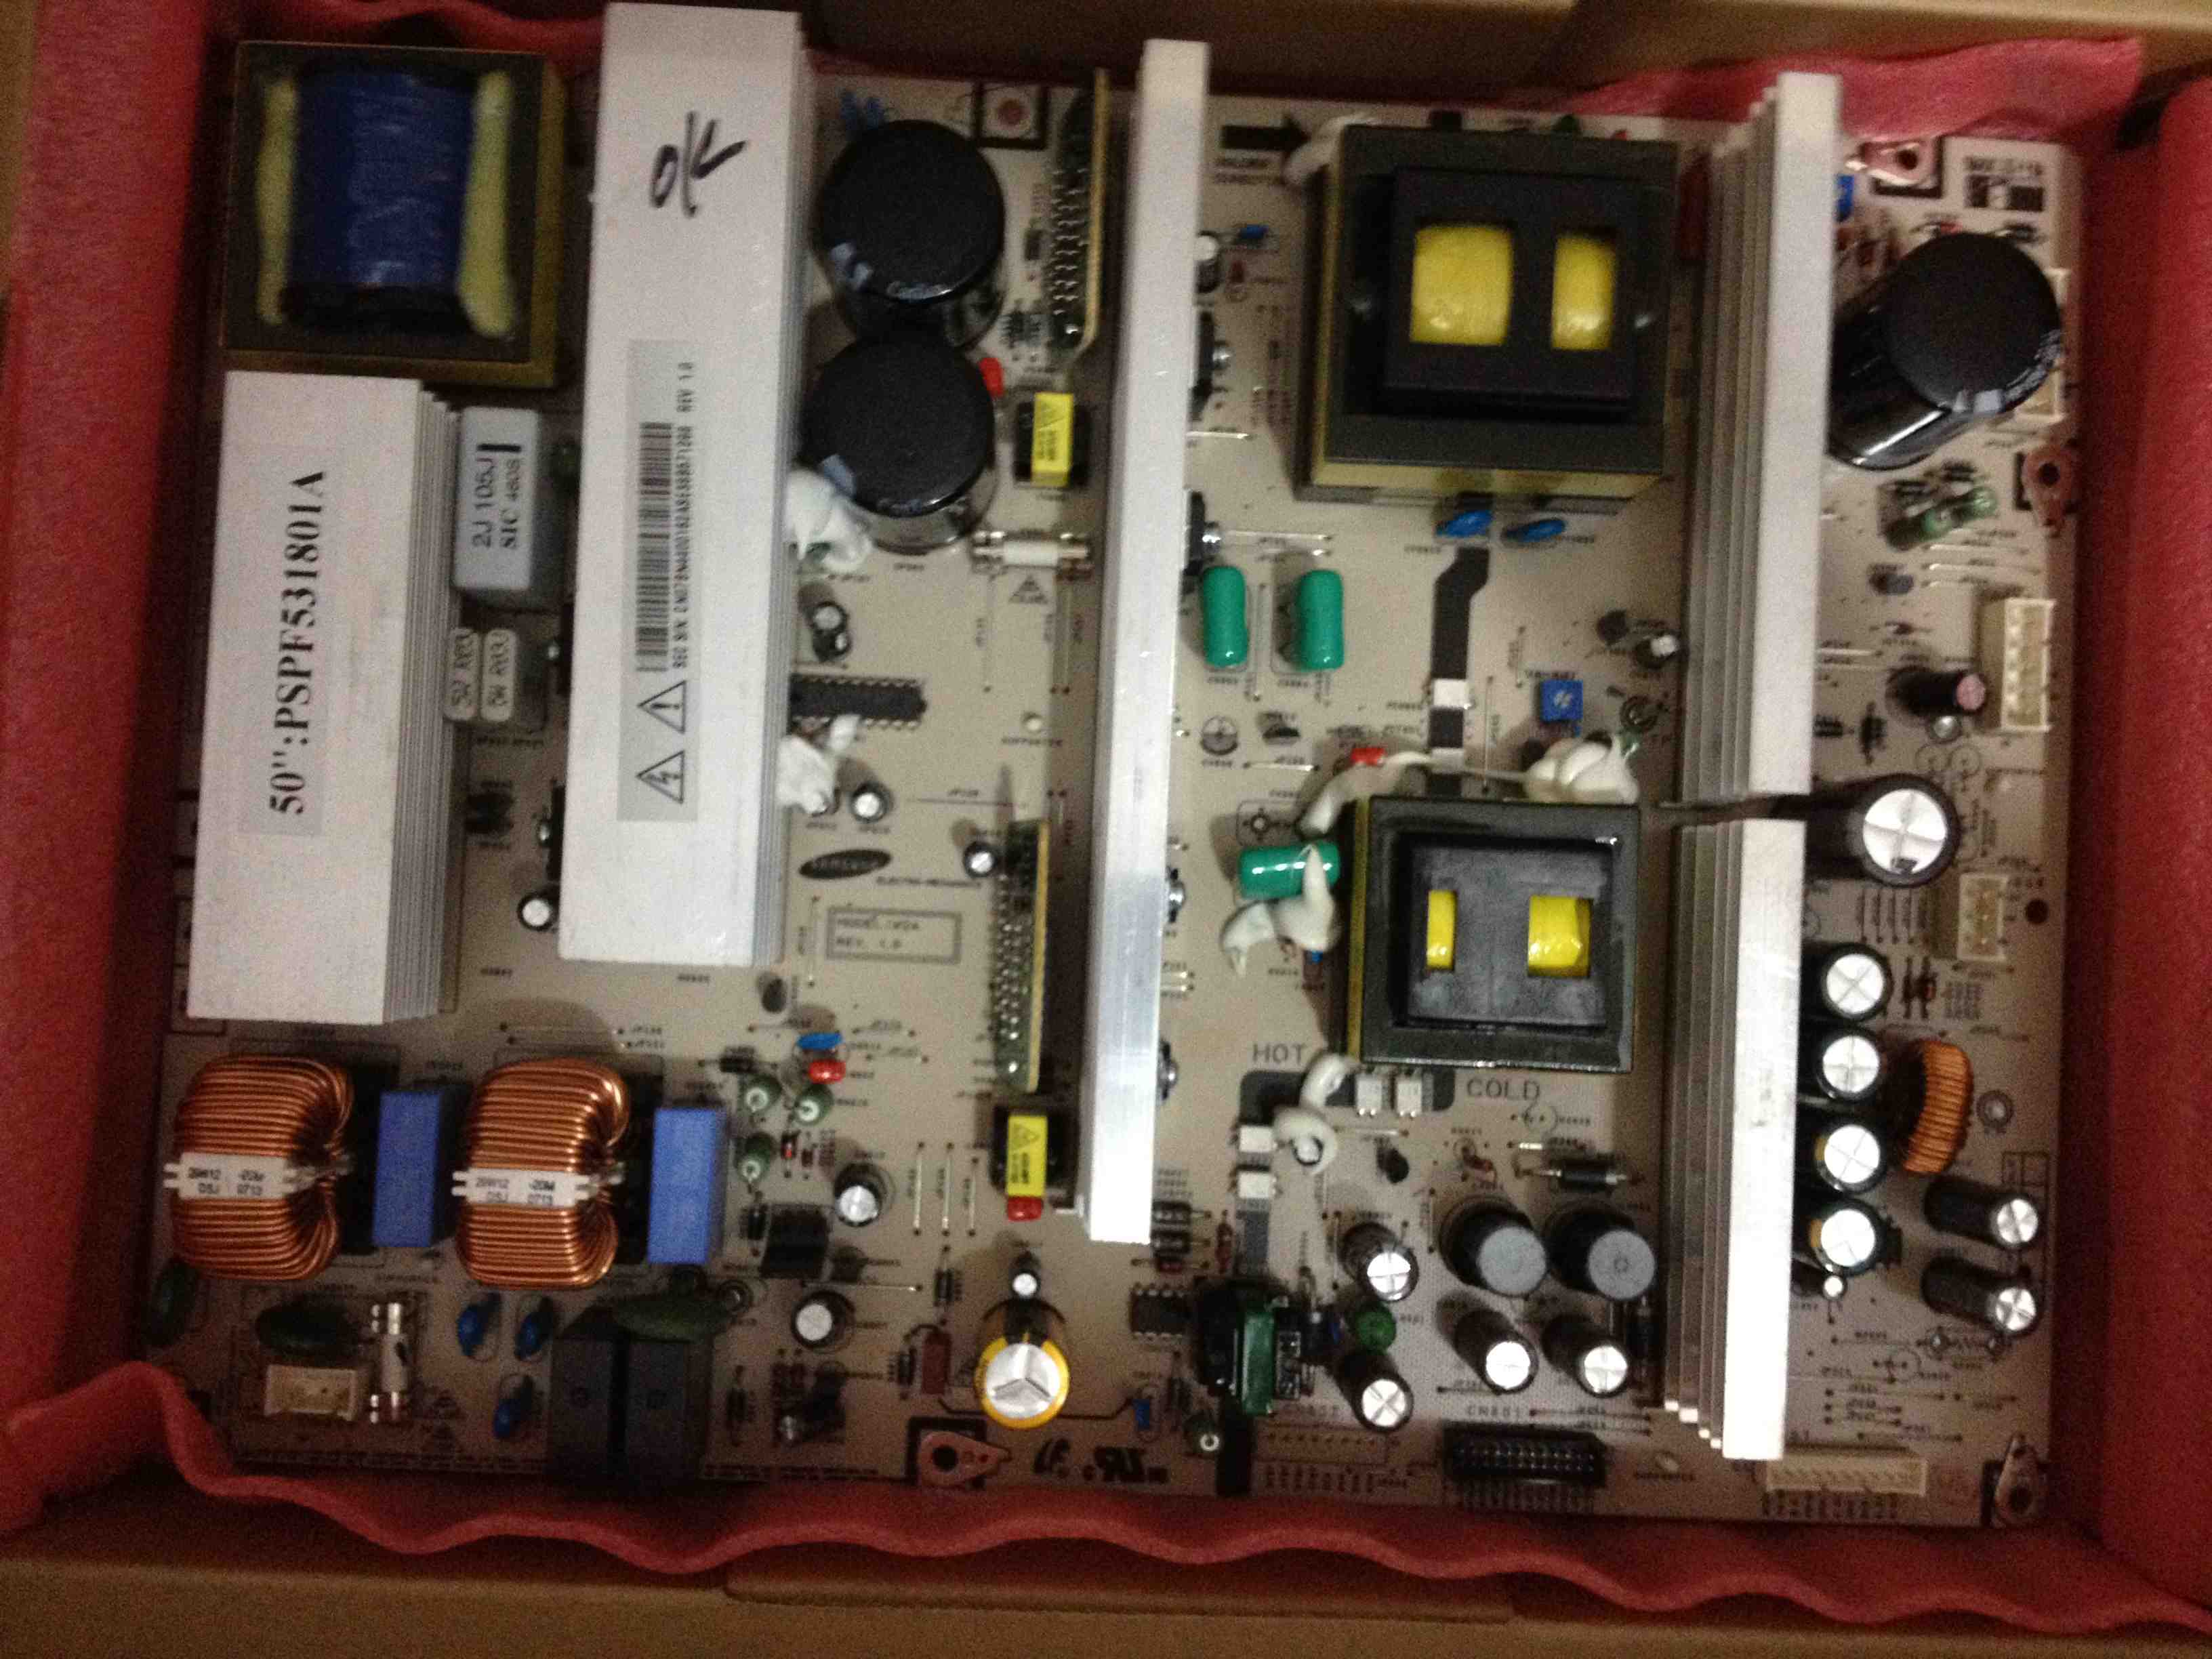 BN44-00162A PSPF531801A 50-inch plasma power supply board